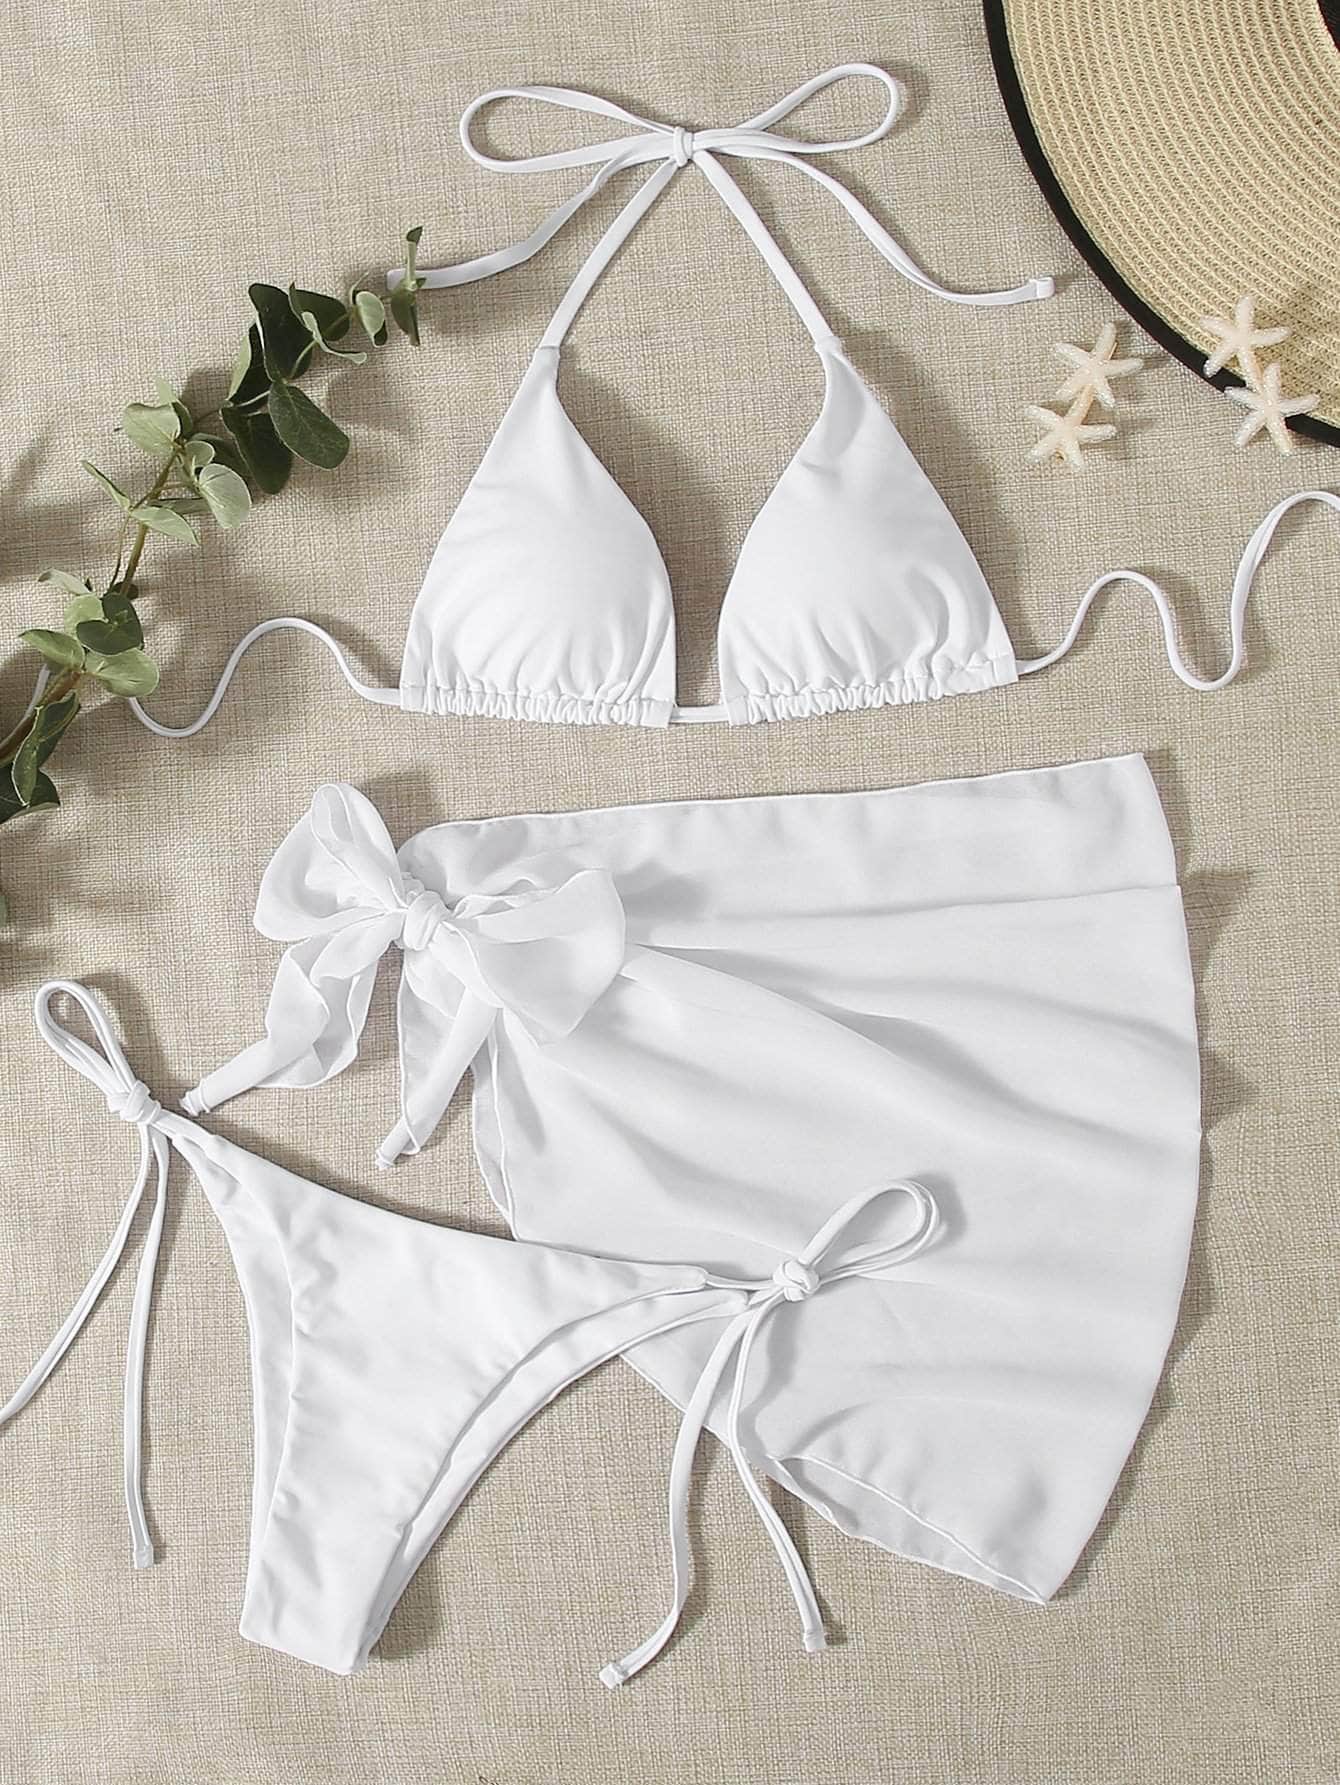 Blanco / S 3 piezas vestido de baño bikini triángulo de tie dye con falda de playa